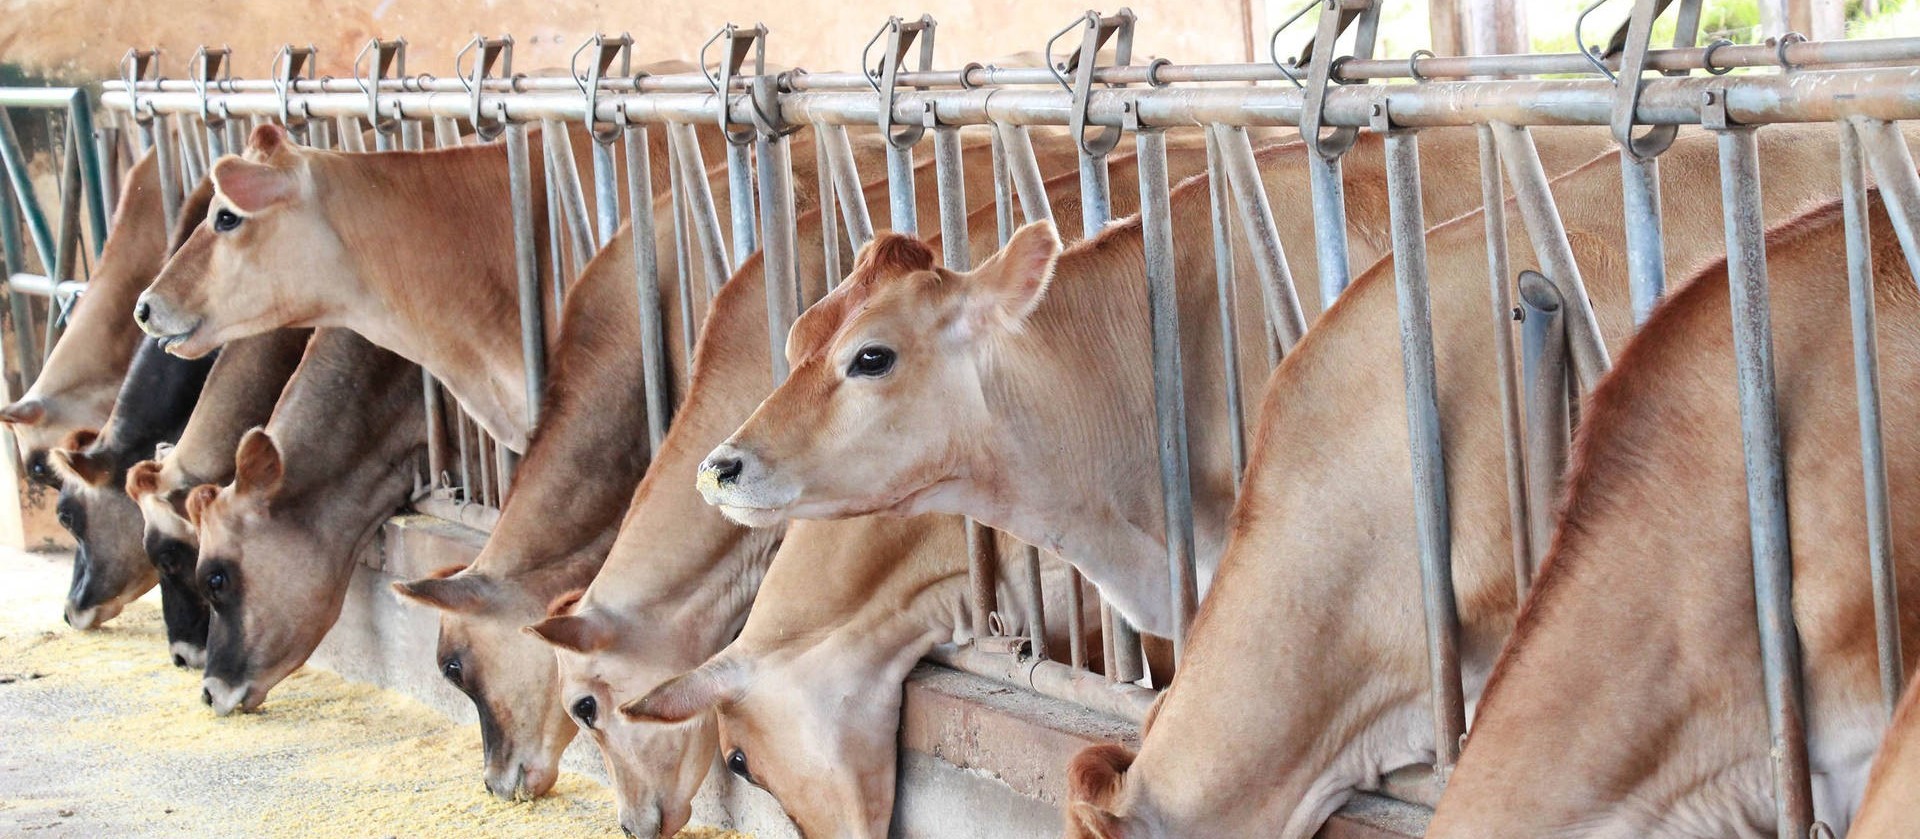 Pandemia prejudica exportações de bovinos em pé